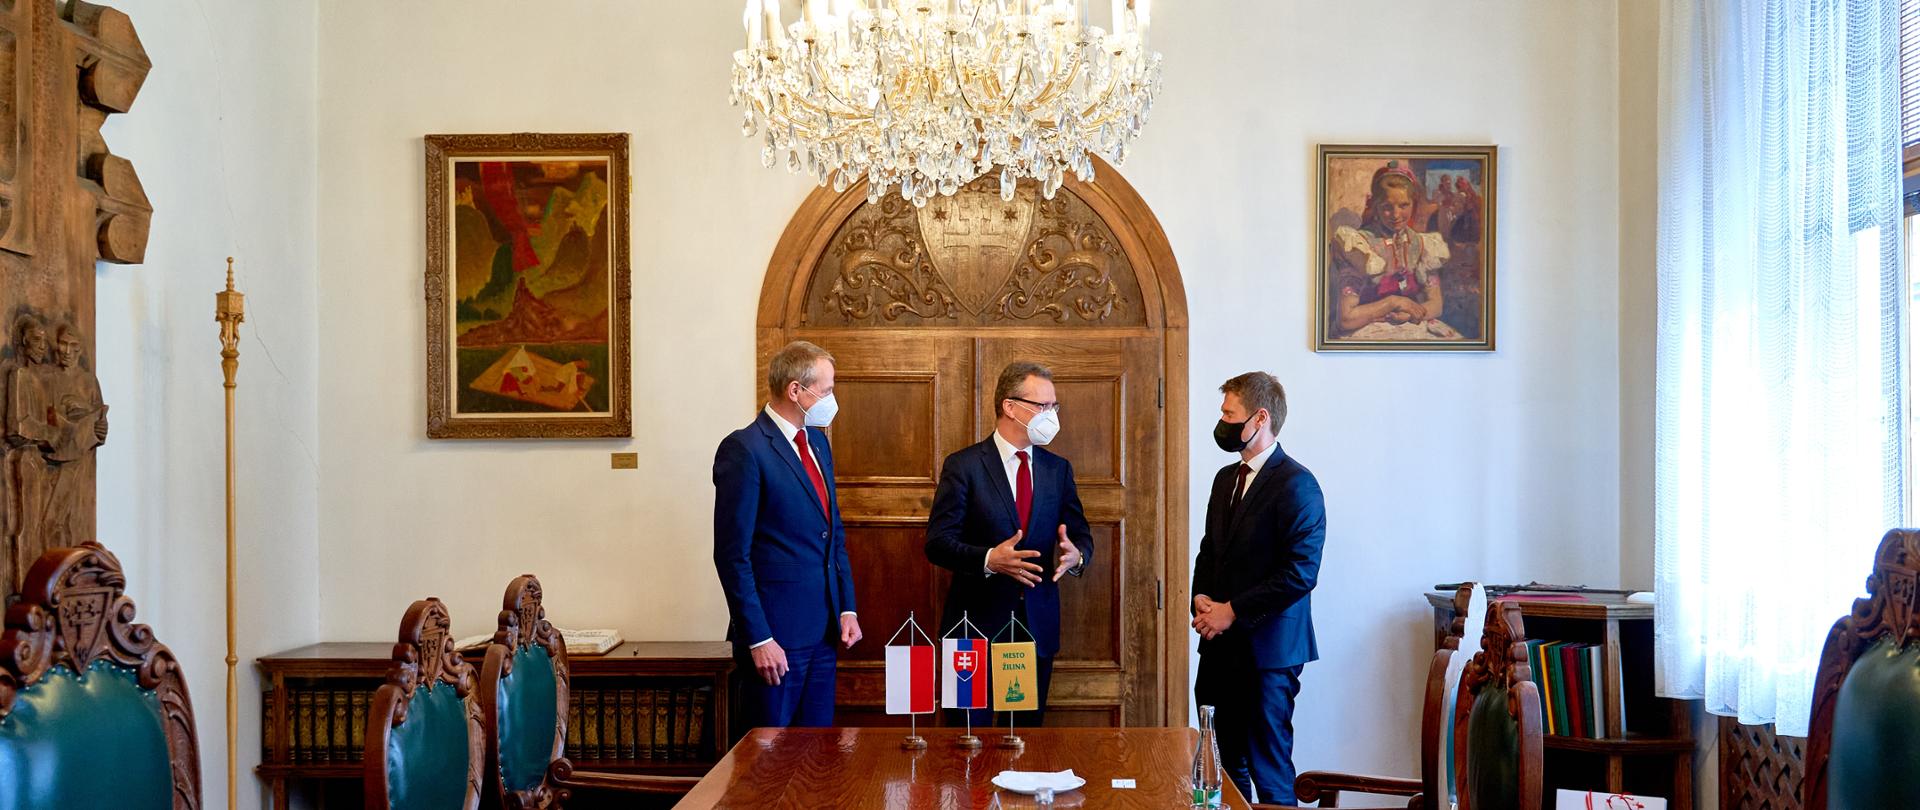 Spotkanie ambasadora Krzysztofa Strzałki z burmistrzem miasta Żylina Petrem Fiabánem oraz zastępcą burmistrza Vladimírem Randą